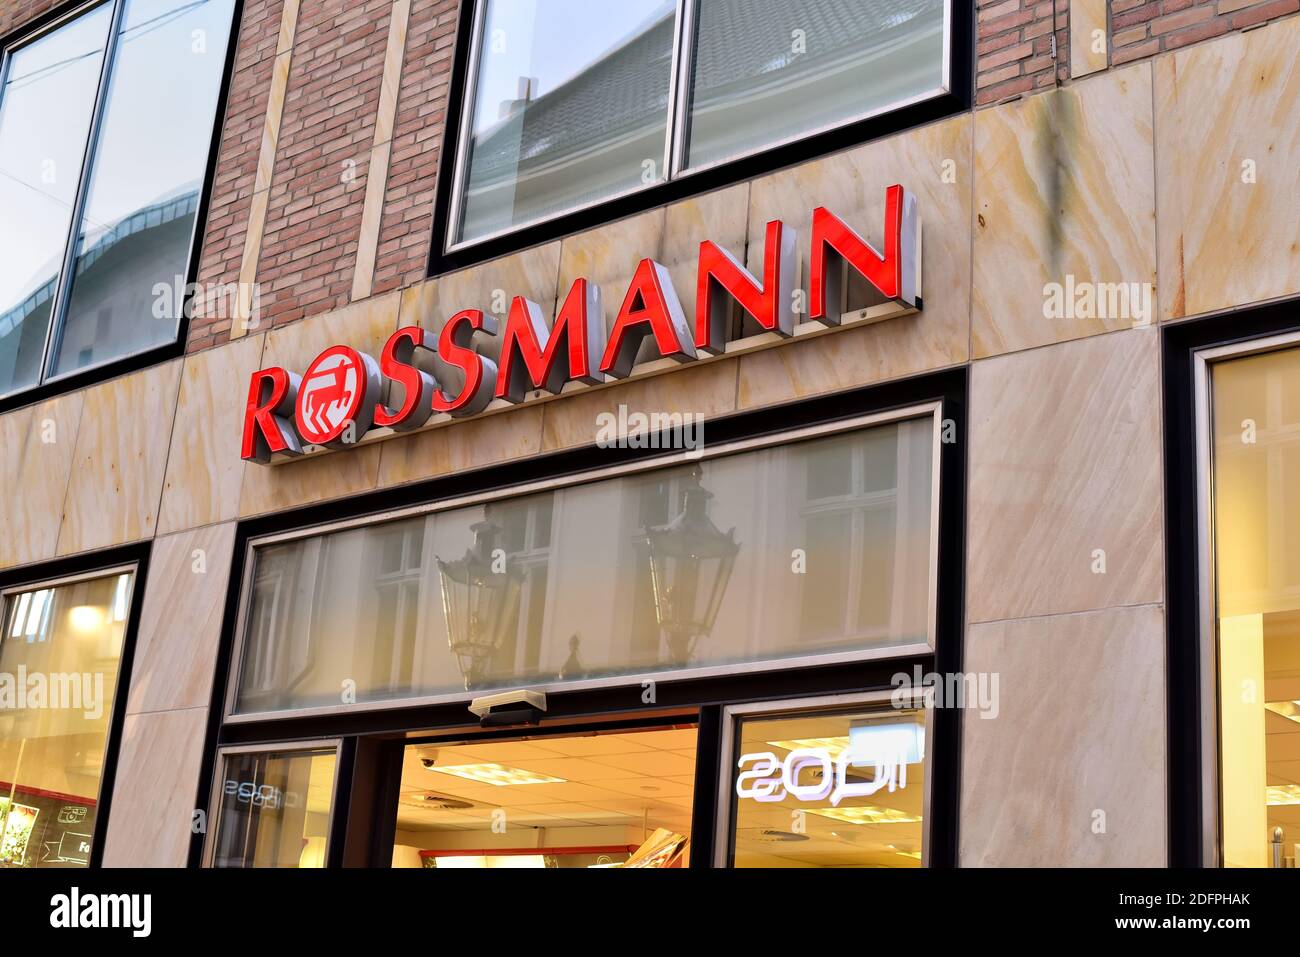 Rossman -Fotos und -Bildmaterial in hoher Auflösung – Alamy